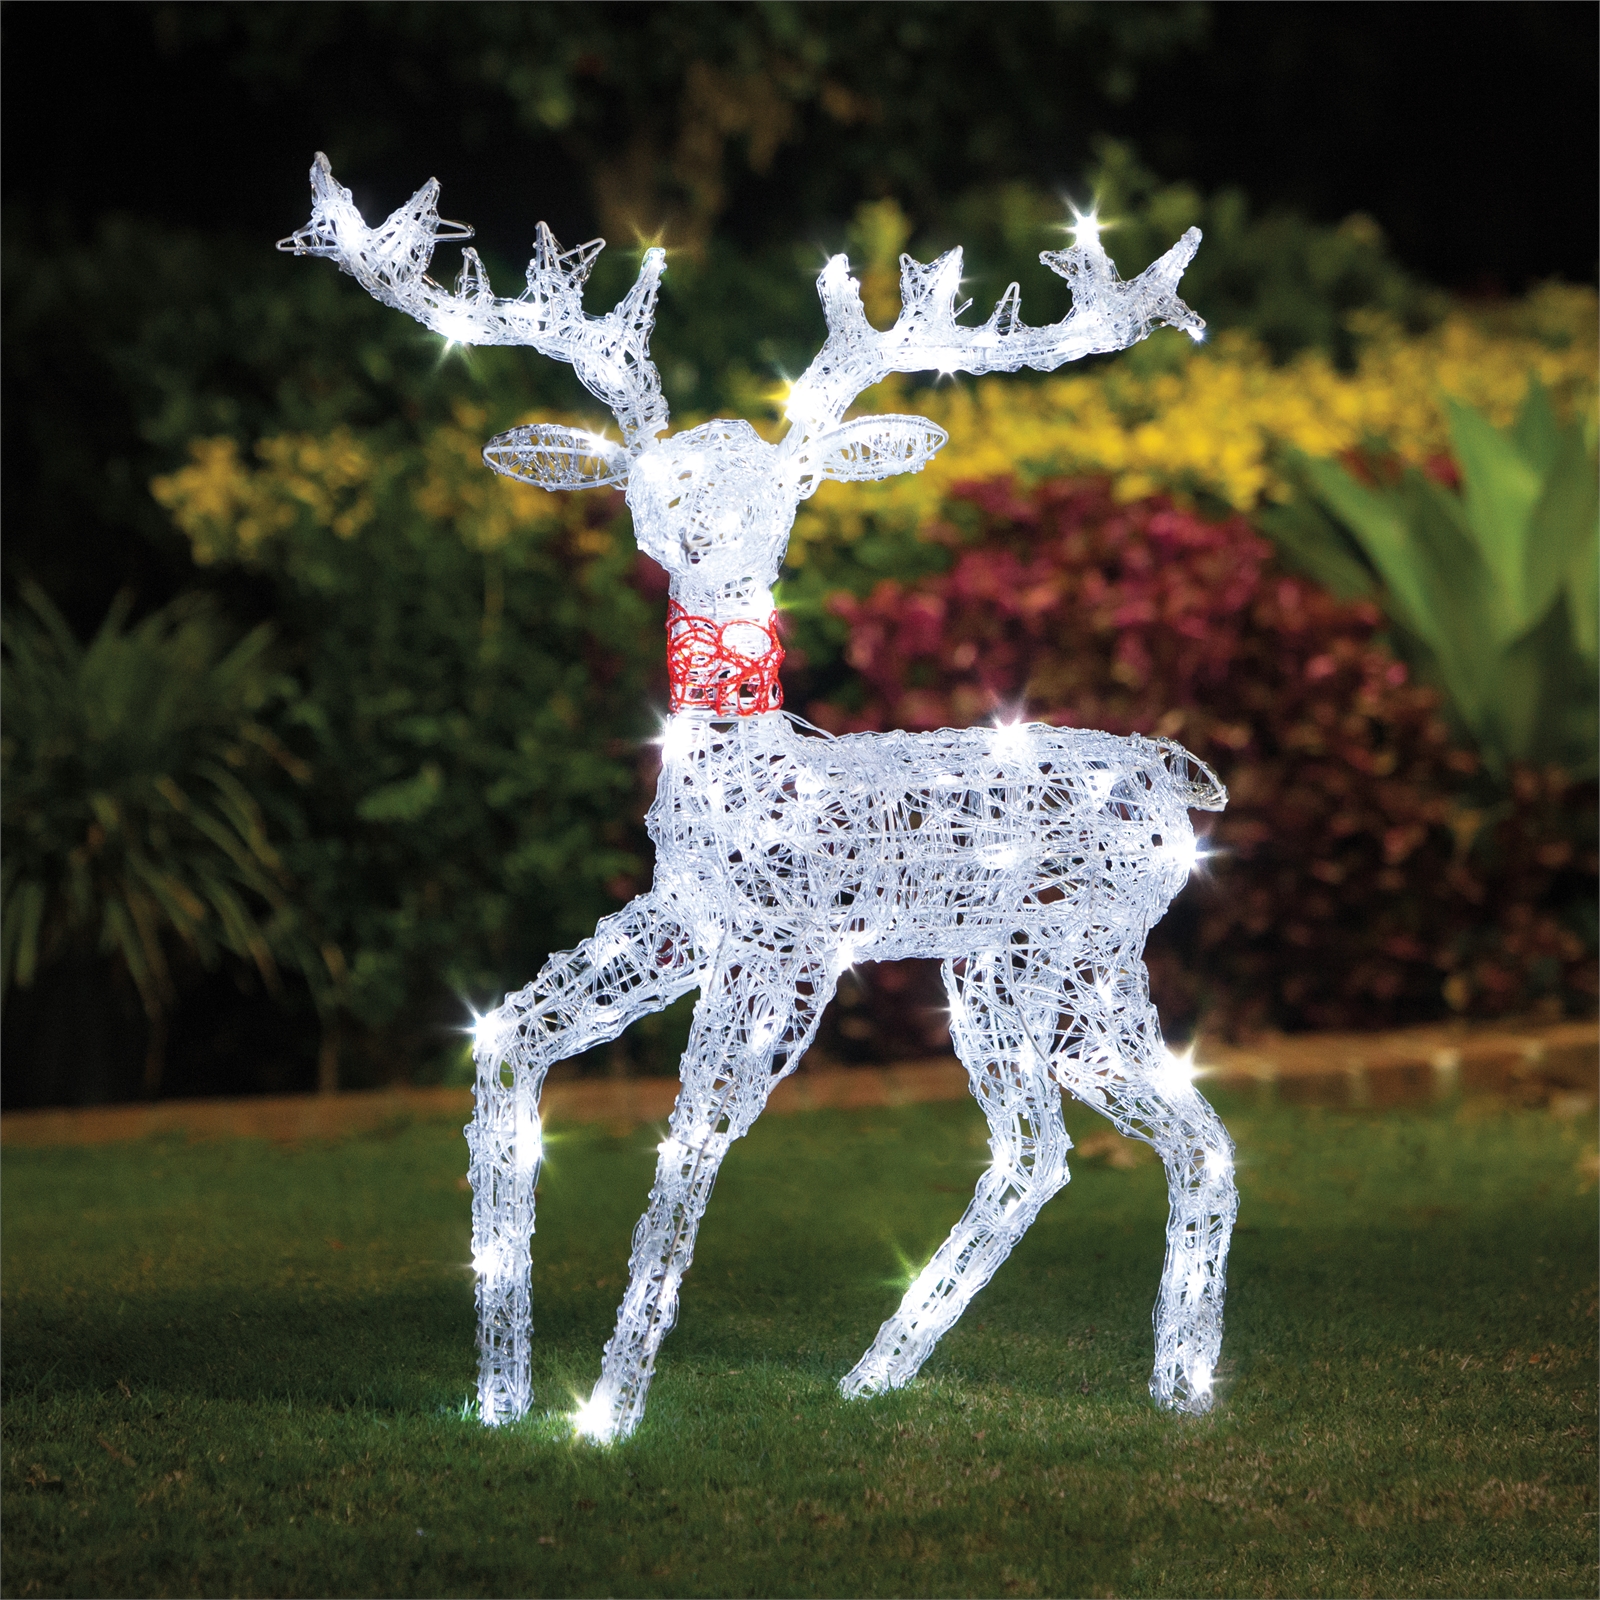 Lytworx 100 LED White Festive Kicking Reindeer Light Statue